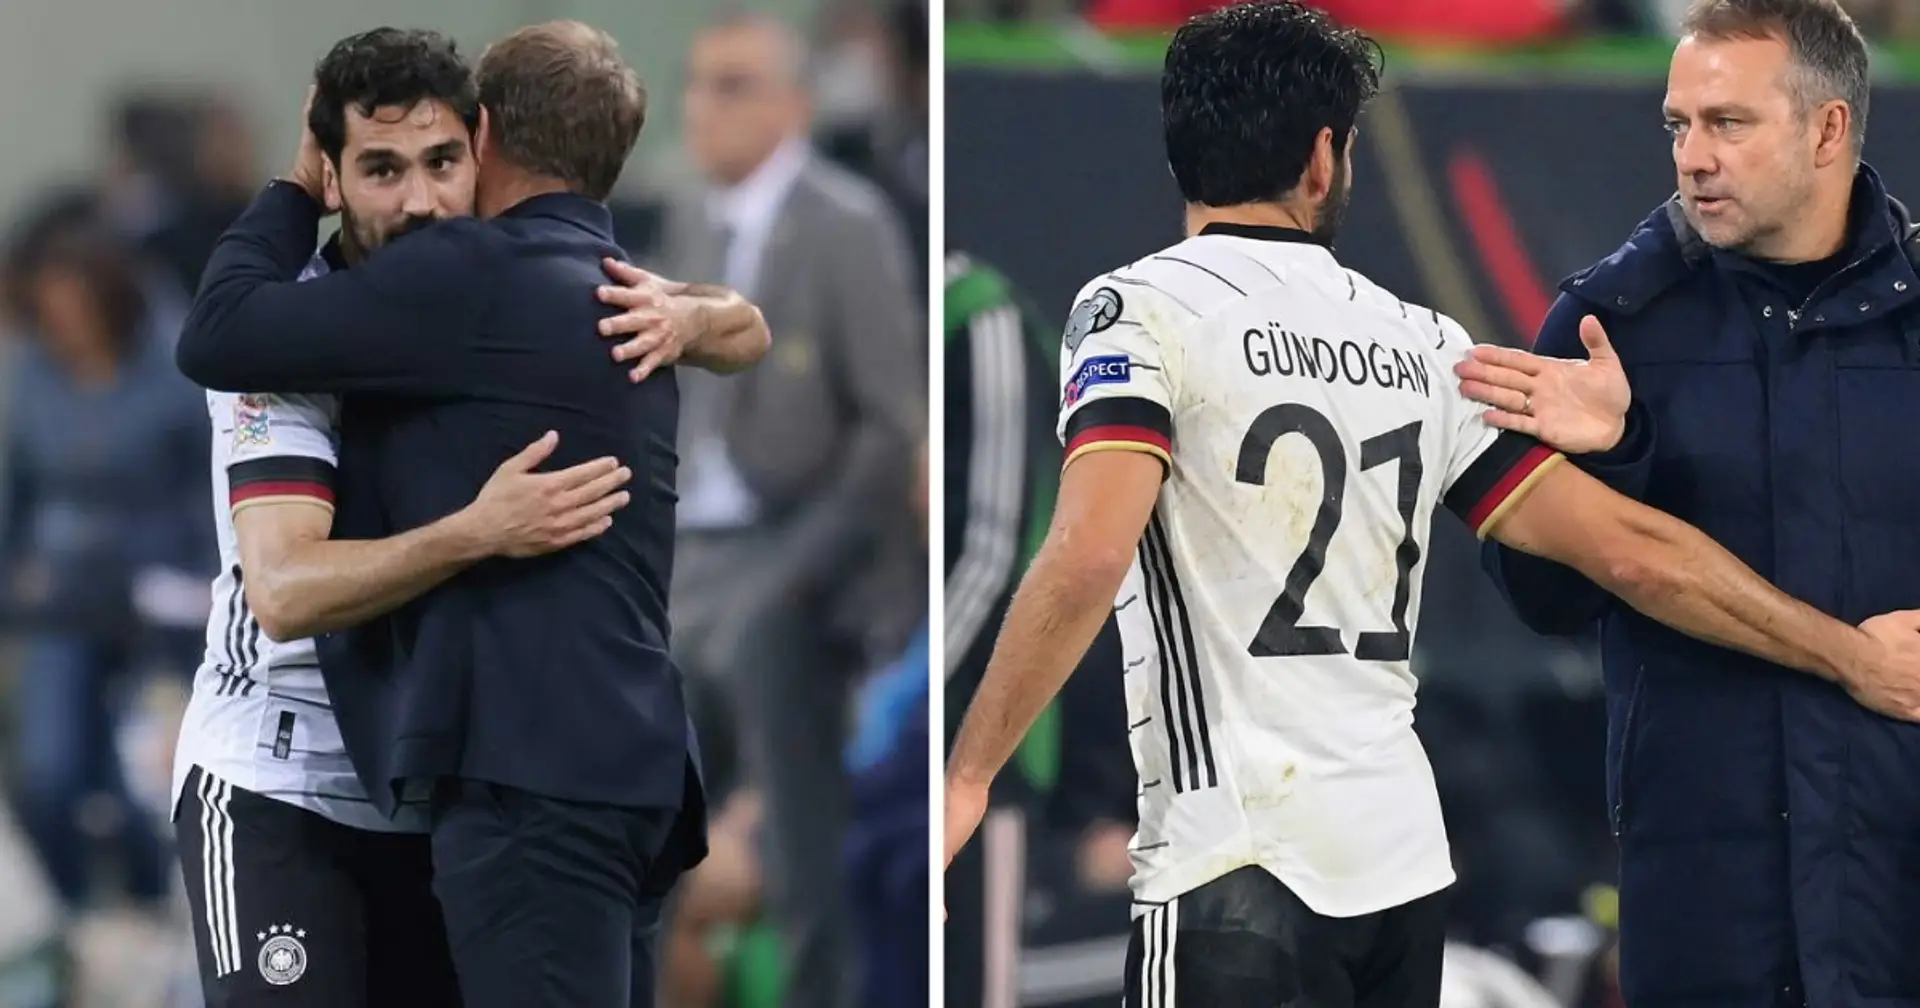 "Du bist ein super Mensch": DFB-Kapitän Gündogan hat sich beim entlassenen Bundestrainer Hansi Flick bedankt 